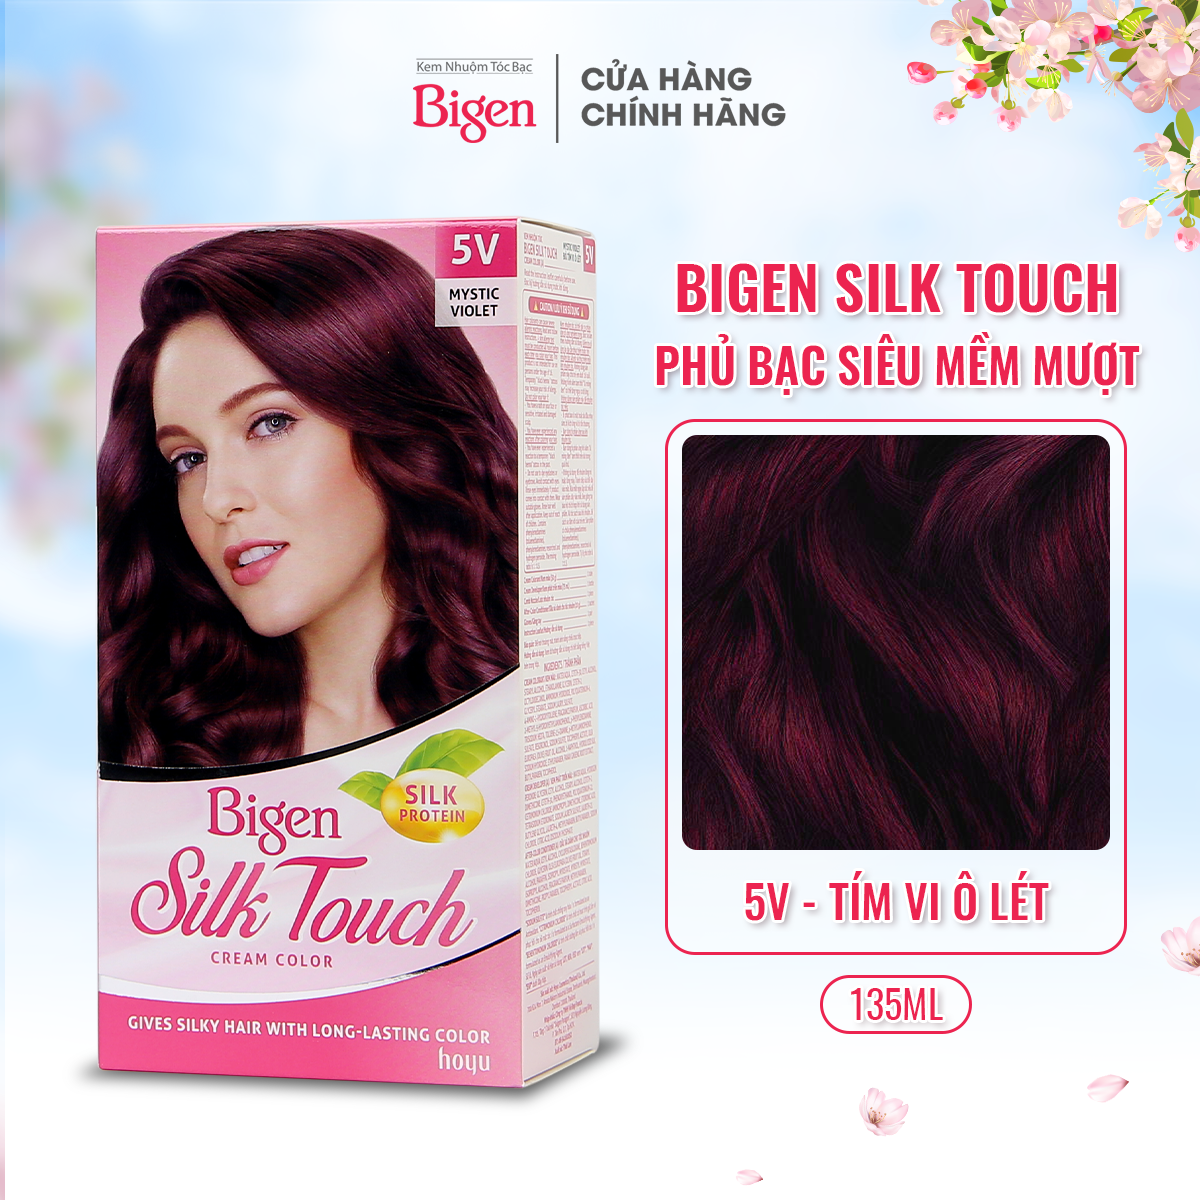 Thuốc nhuộm phủ bạc Bigen Silk Touch phủ bạc hoàn toàn, dưỡng tóc mềm mượt 80ml dạng kem-Đỏ Tím Violet 5V